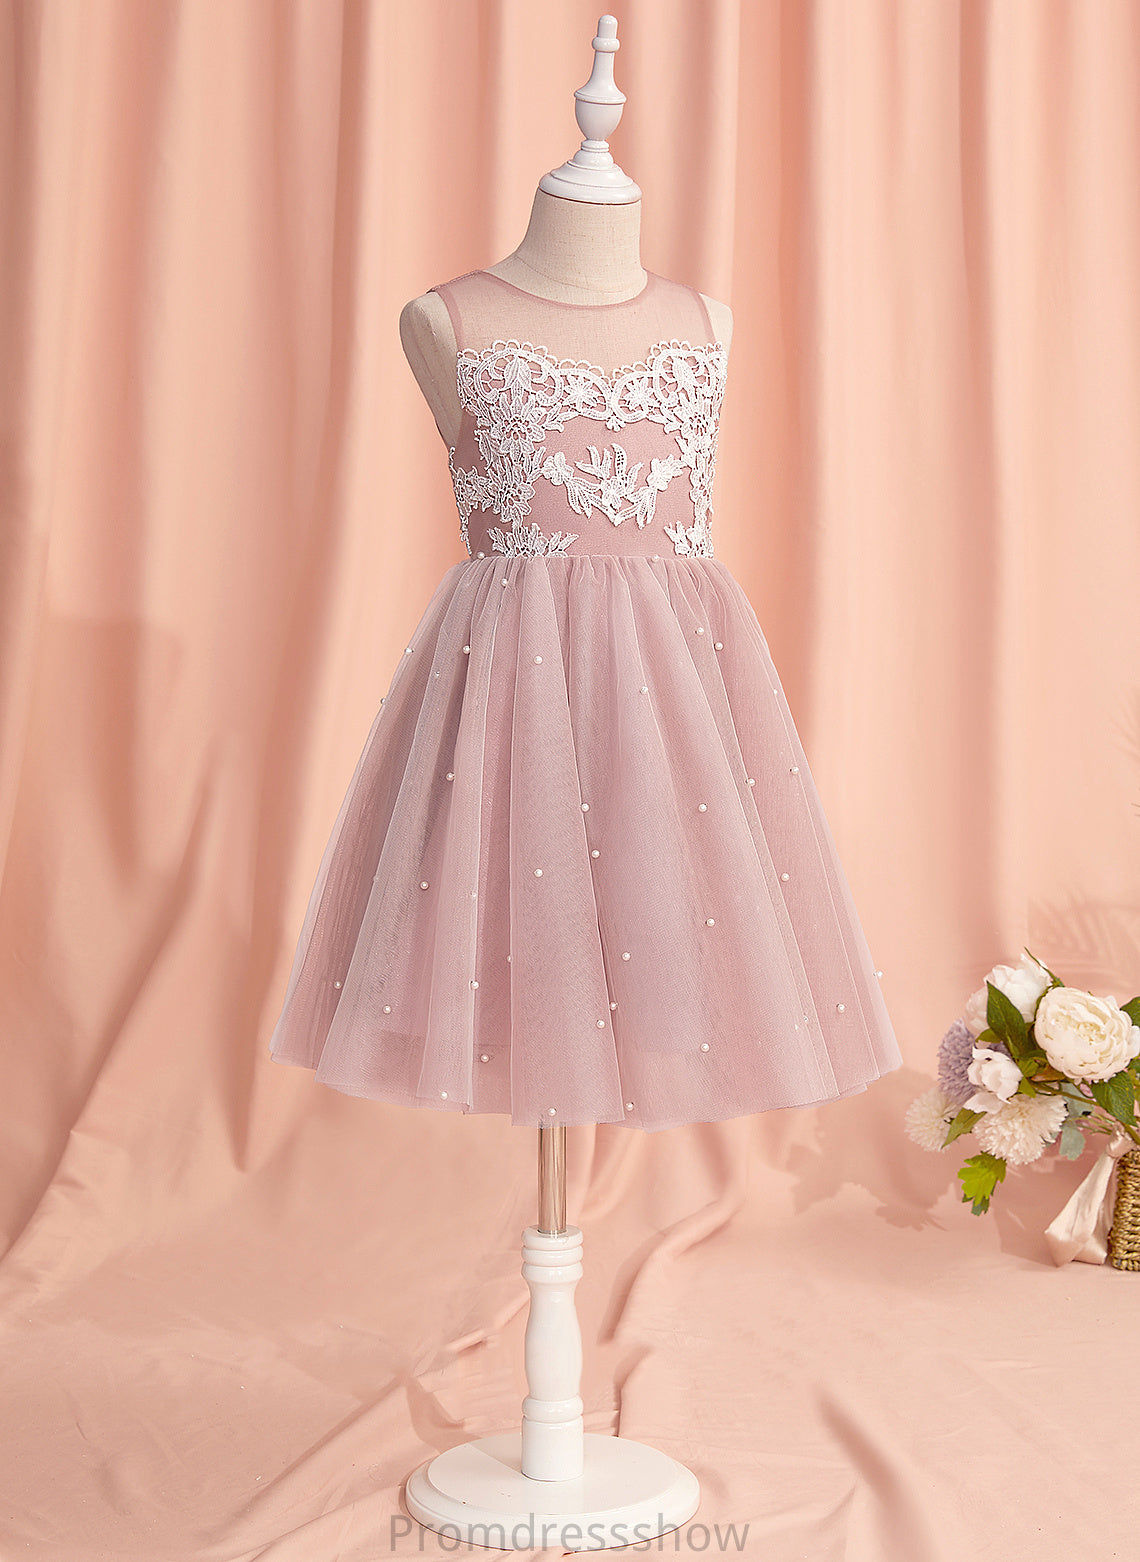 Sleeveless A-Line Flower Girl Dresses Scoop Girl Flower Lace/Beading Tulle - Knee-length Adalynn Neck Dress With